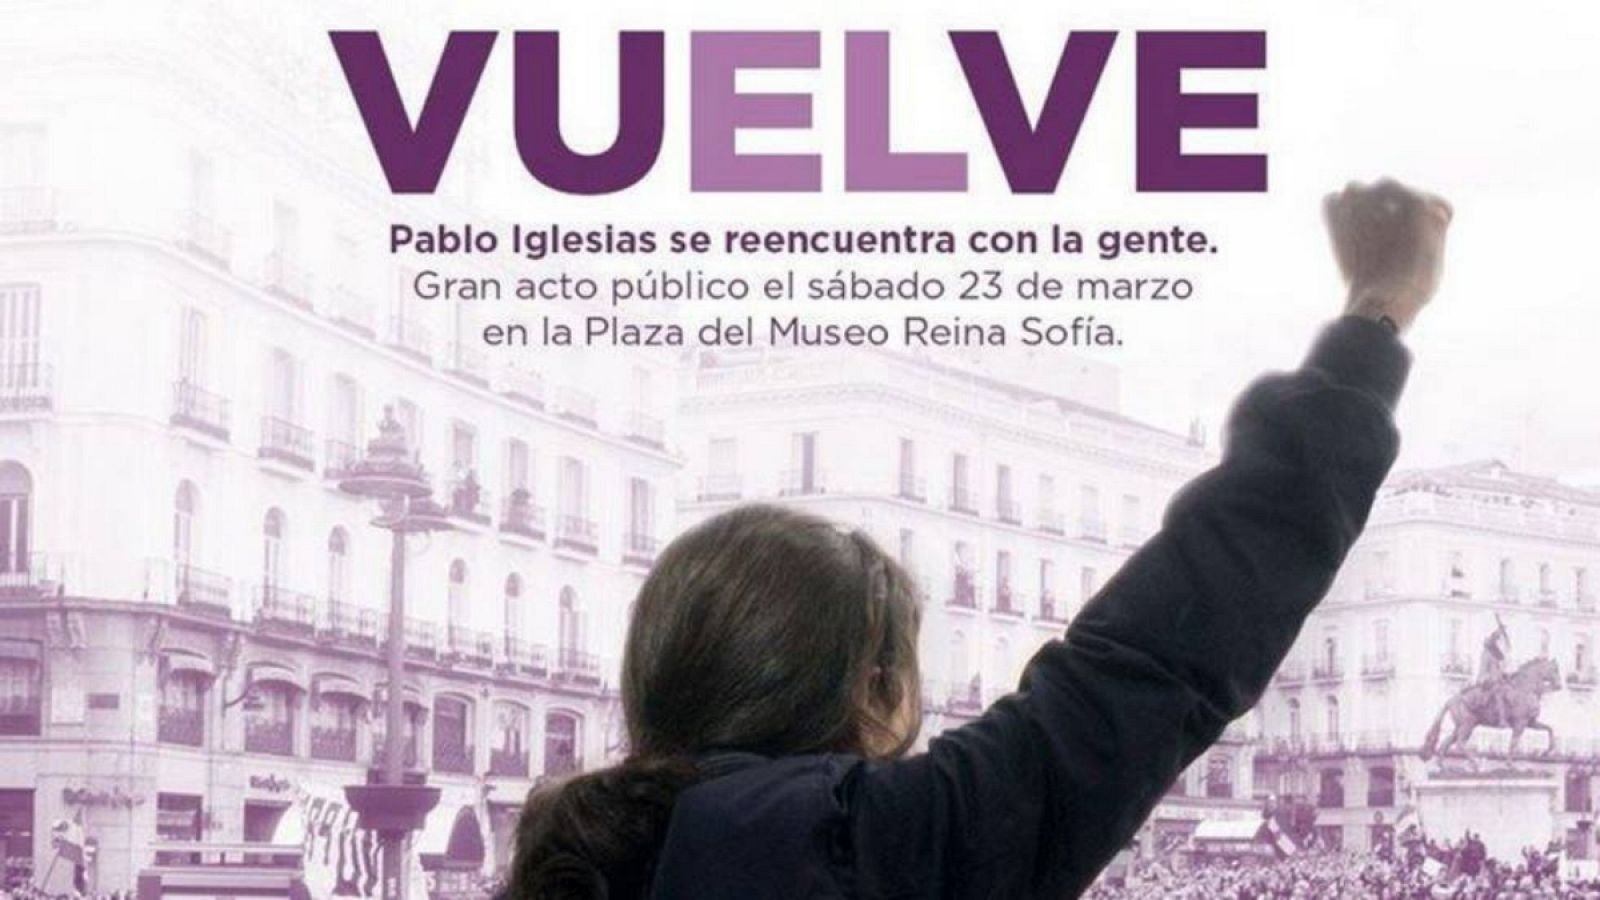 Imagen del cartel con el que Podemos ha anunciado la vuelta de Iglesias